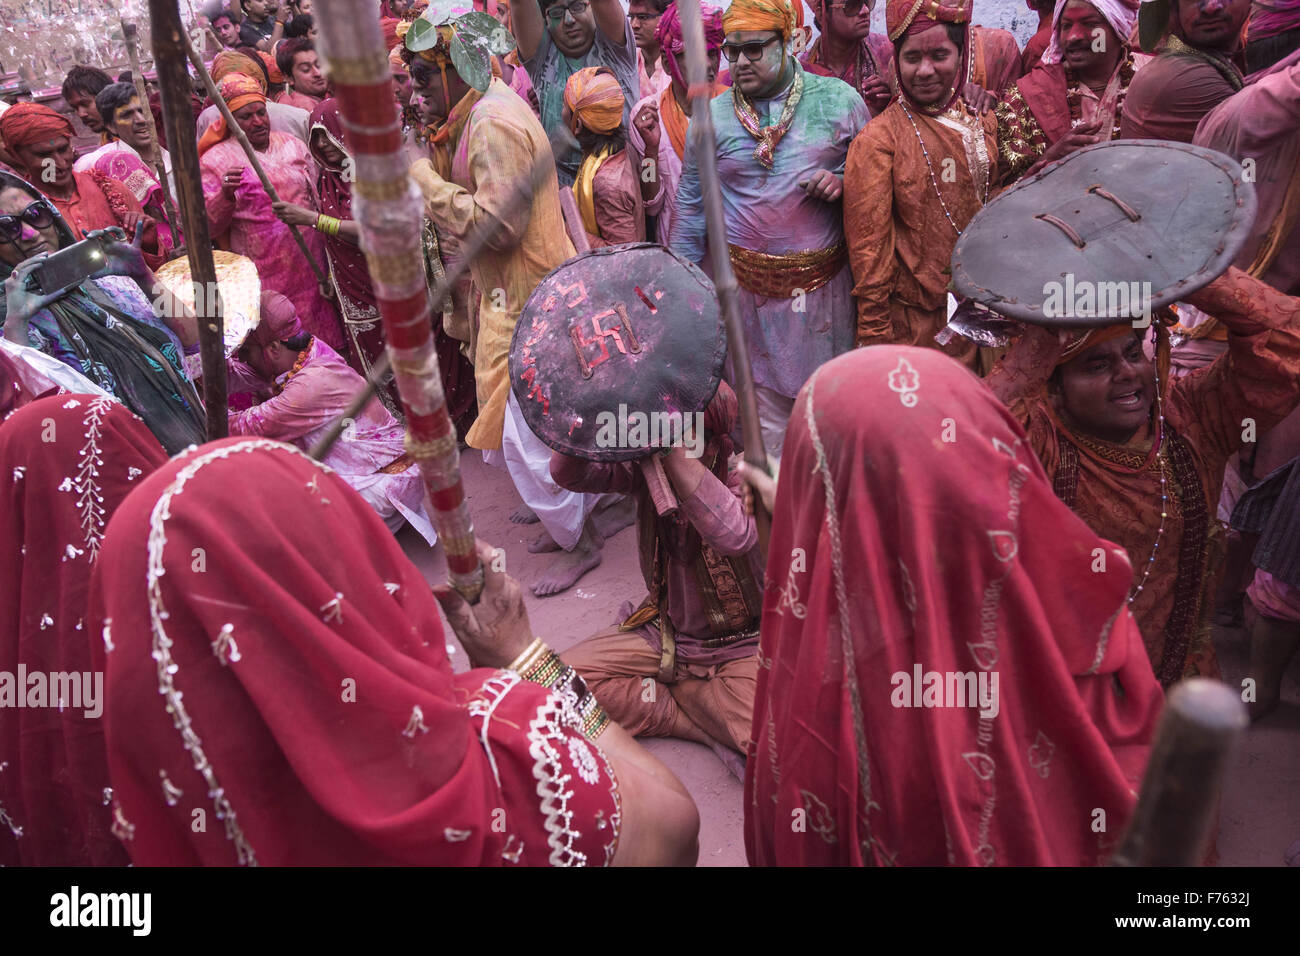 People celebrating holi festival, mathura, uttar pradesh, india, asia Stock Photo